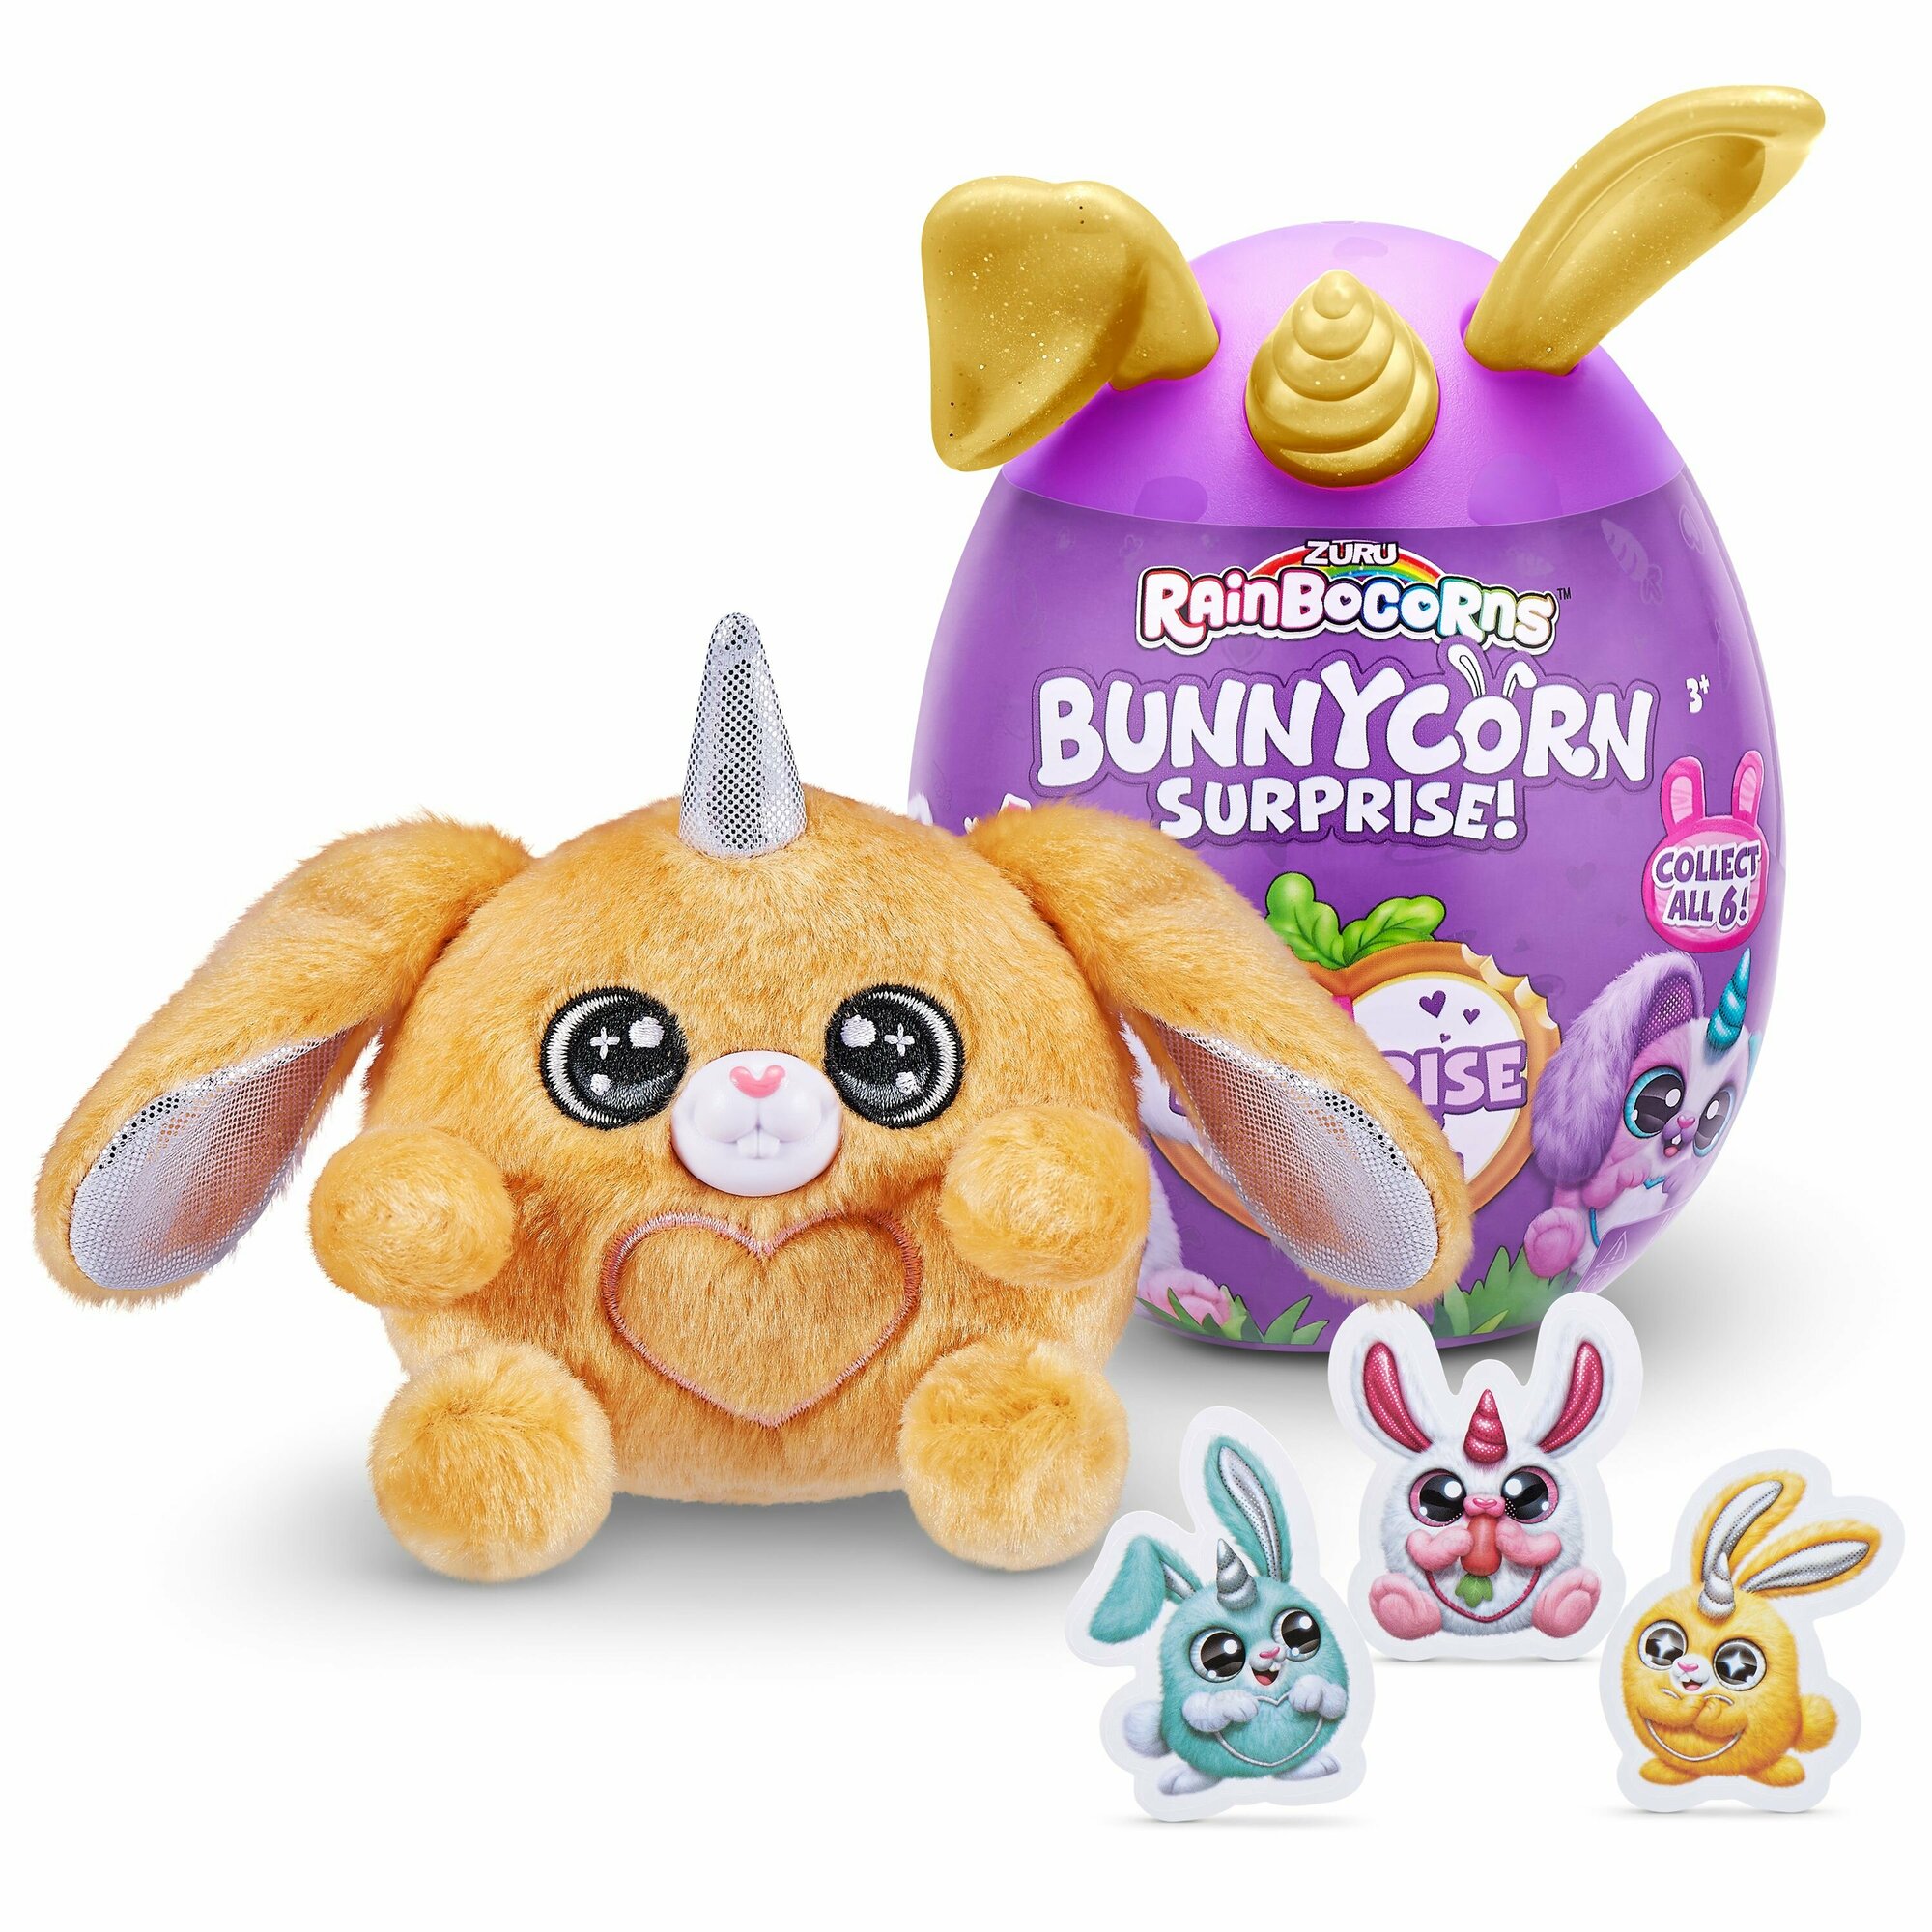 Игровой набор Rainbocorns сюрприз в яйце Bunnycorn Surprise плюшевый кролик и наклейки в ассортименте